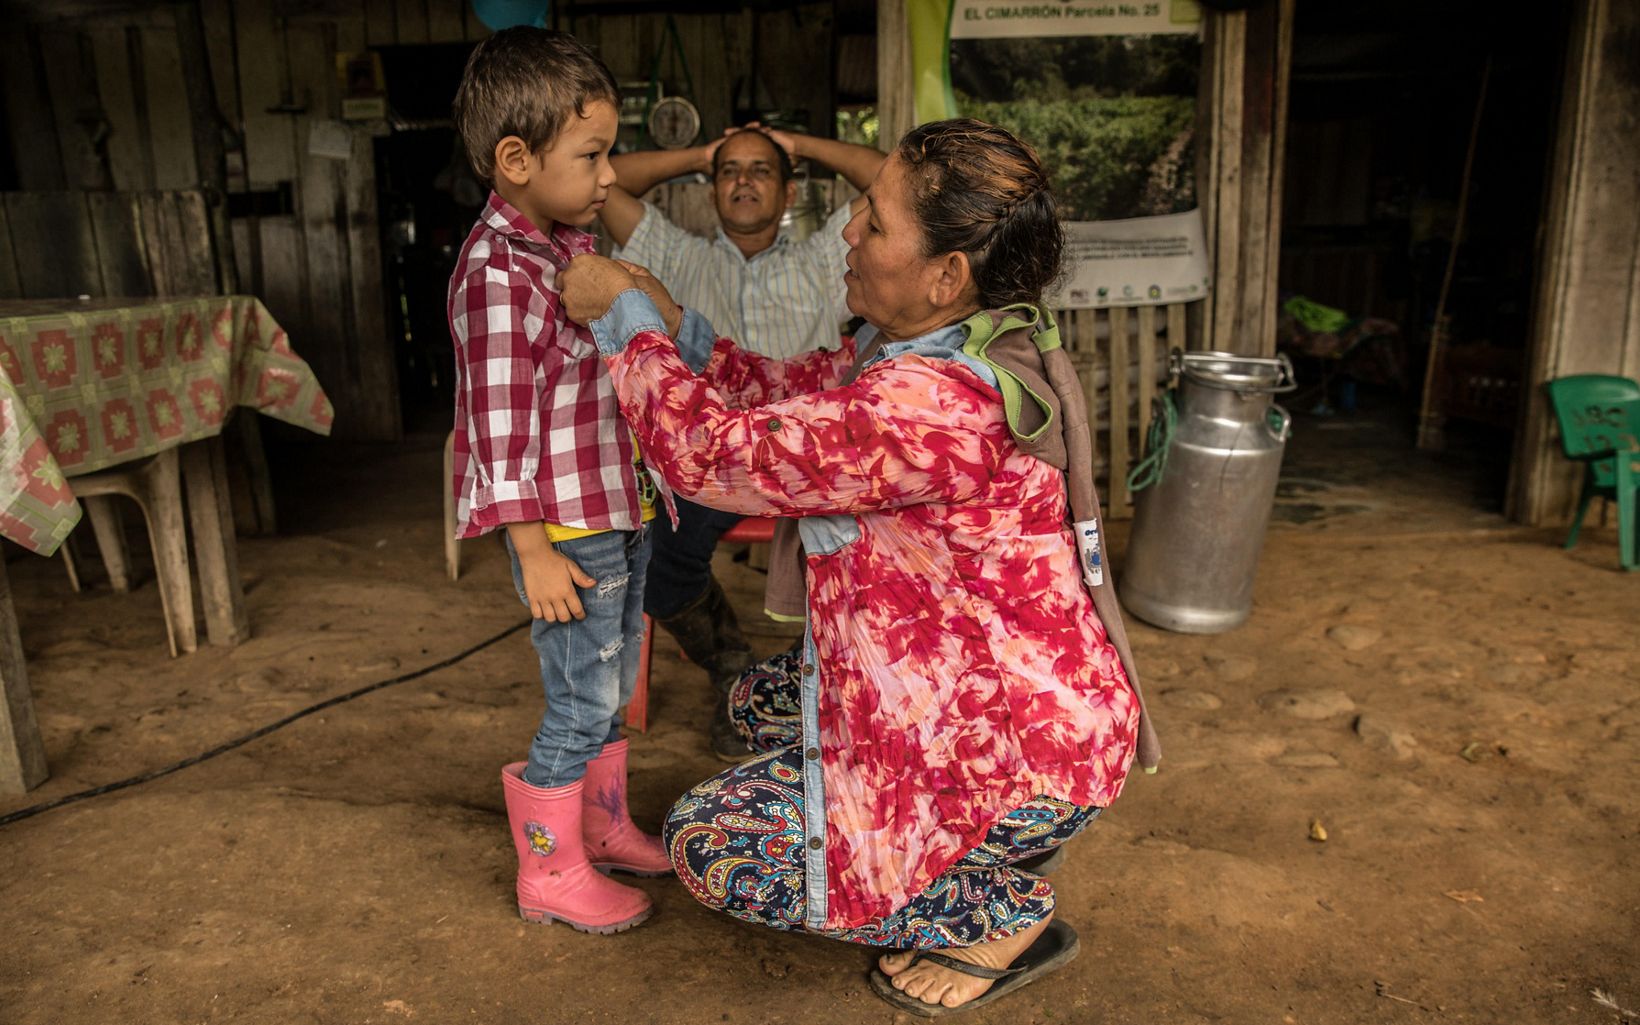 Generaciones unidas Mercedes cuida a su nieto durante las temporadas de vacaciones escolares, e intenta enamorarlo de la naturaleza. Espera sembrar la semilla de conservar en su generación. © TNC Colombia